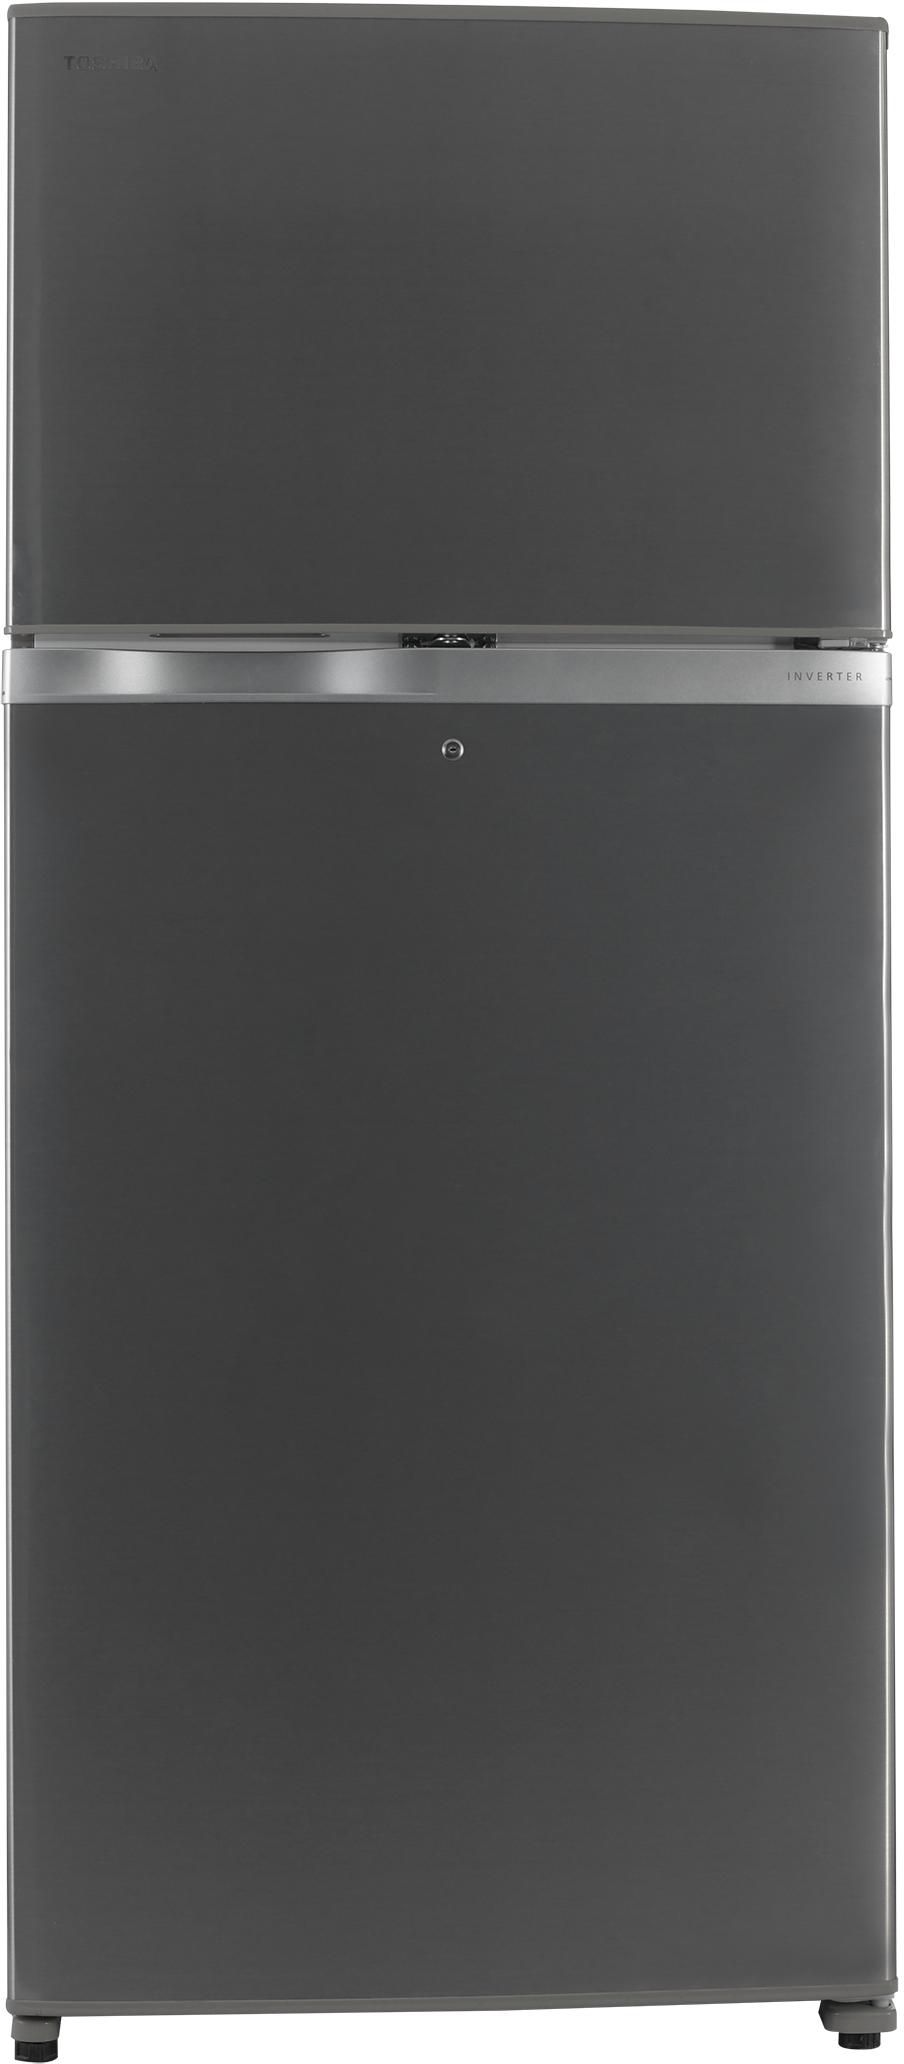 Toshiba Refrigerator,15.7Cuft, Freezer 5.8Cu.ft, Inverter, Bright Stainless Steel